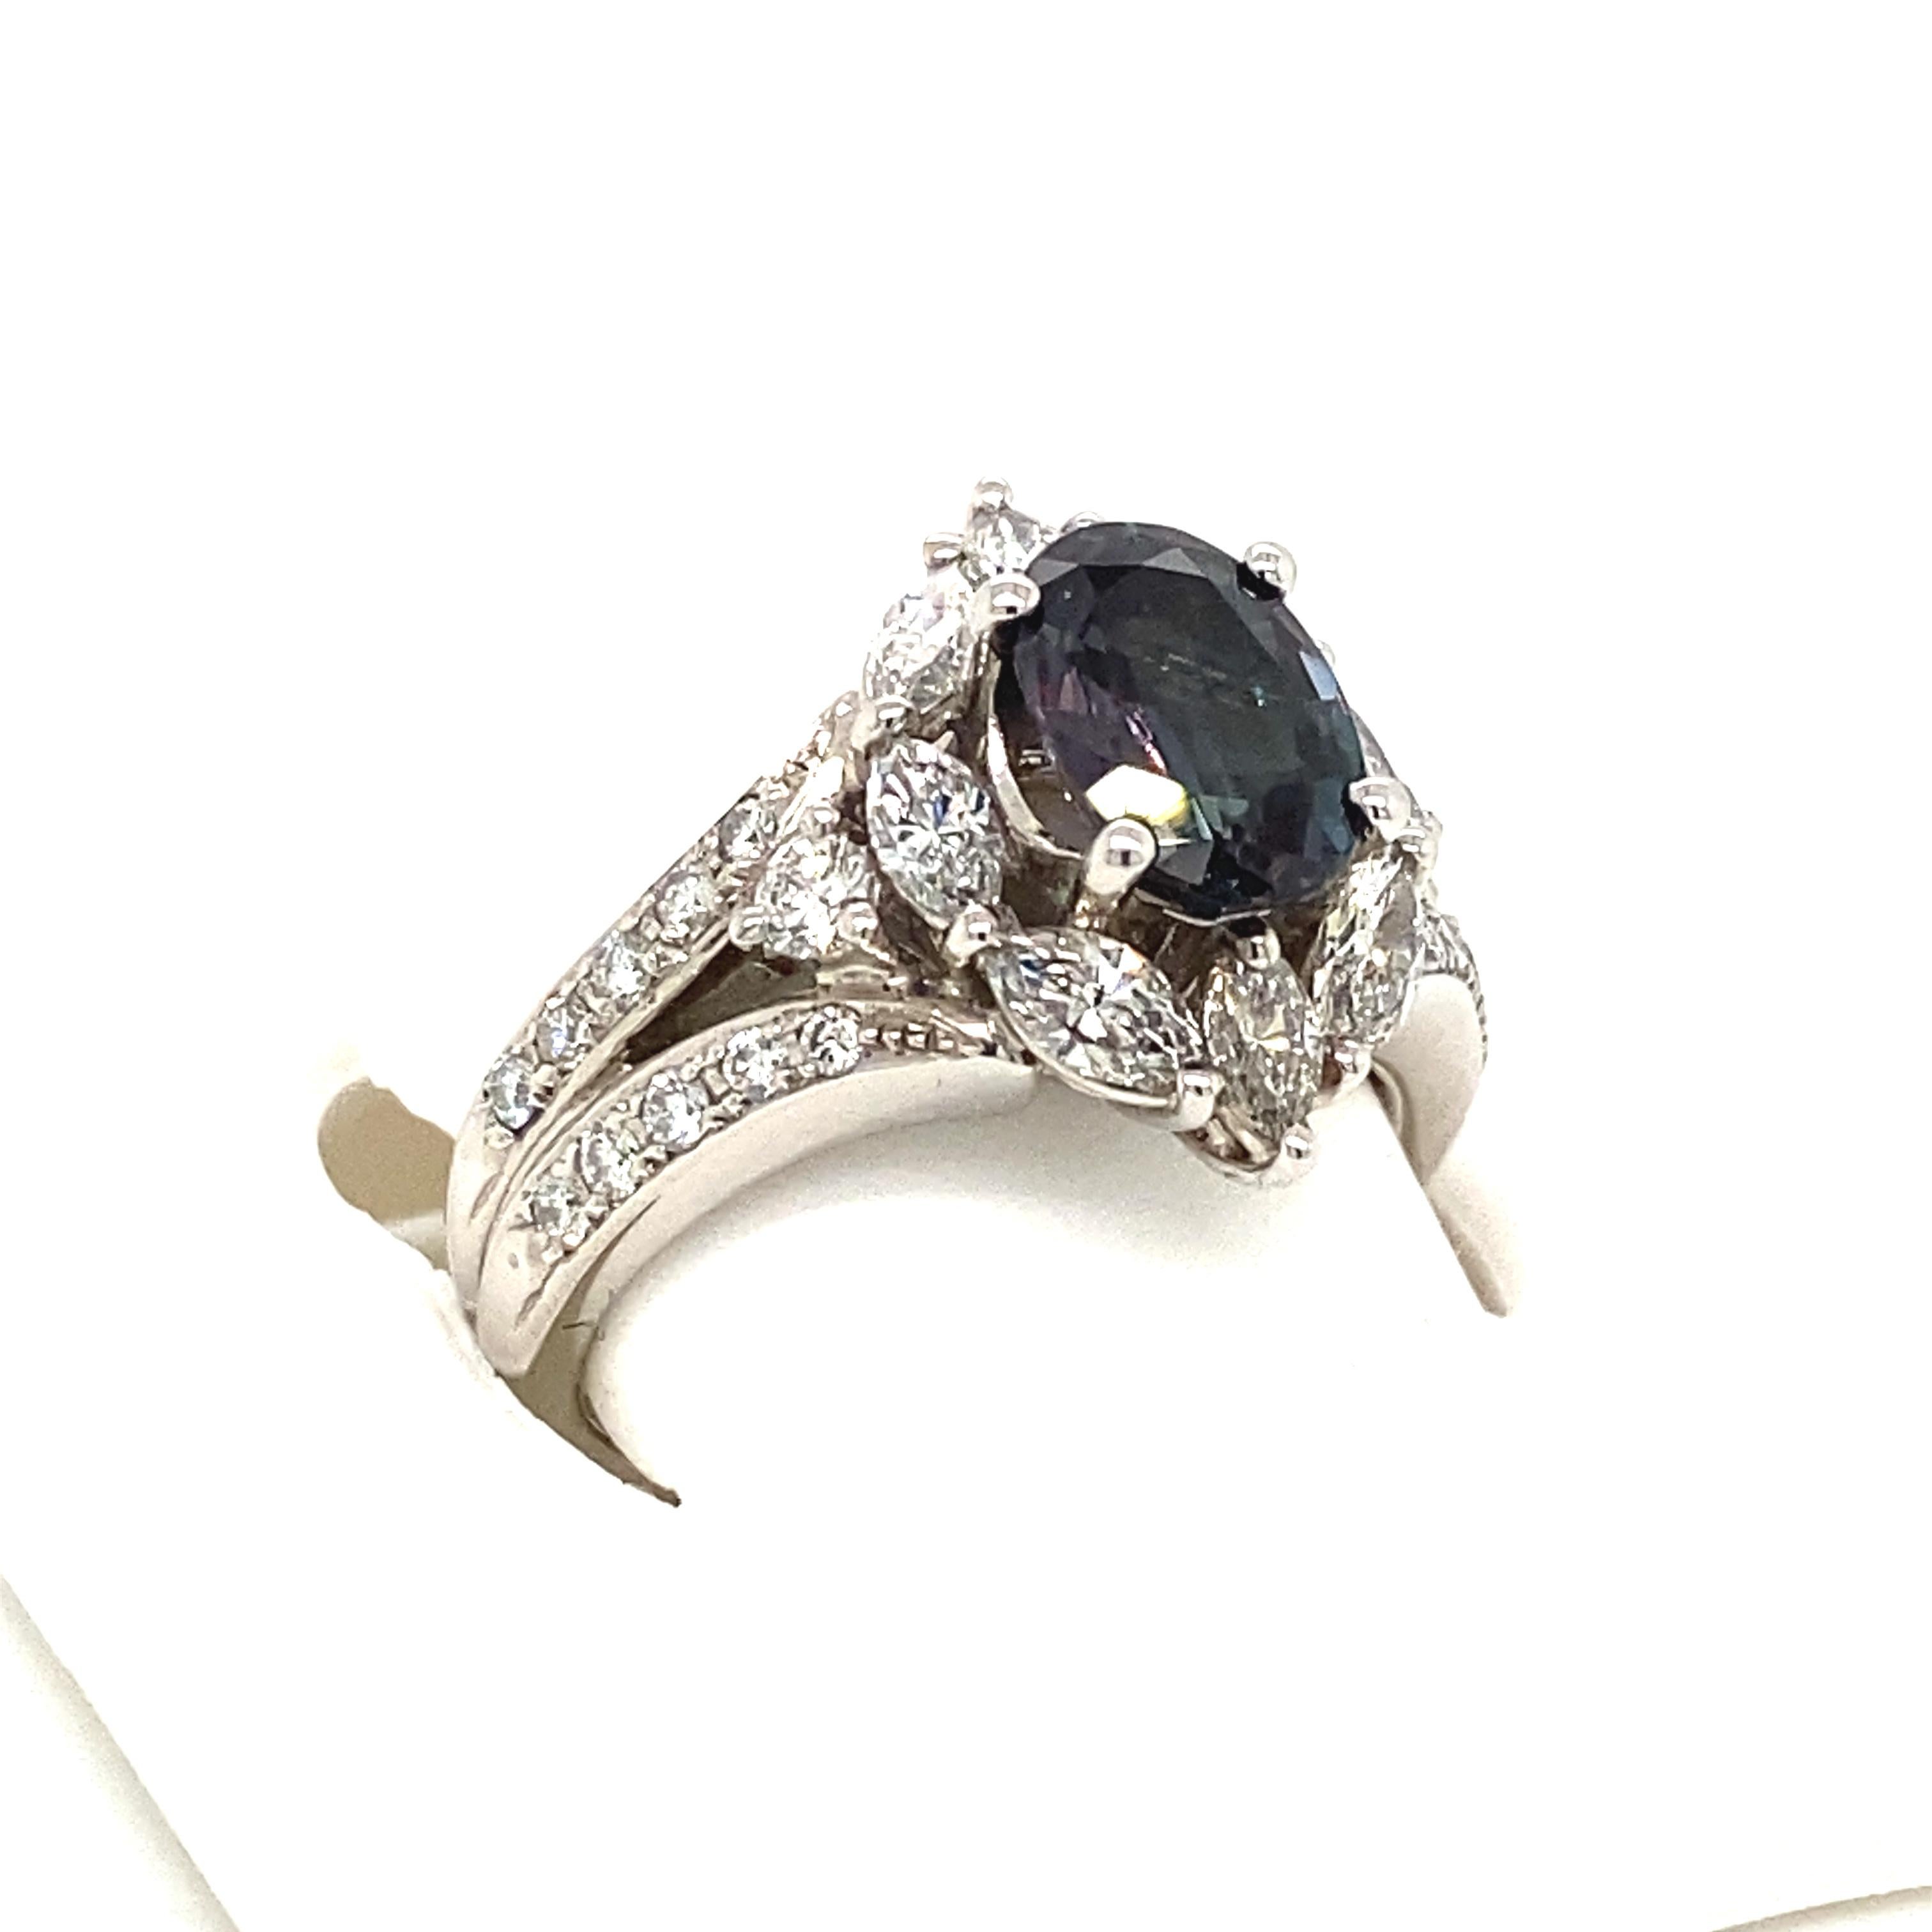 Dies ist ein wunderschöner ovaler Alexandrit in AAA-Qualität, der von zierlichen Diamanten umgeben ist und in einer Vintage-Fassung aus Platin gefasst ist. Dieser Ring enthält einen natürlichen ovalen Alexandrit von 1,74 Karat, der vom Gemological